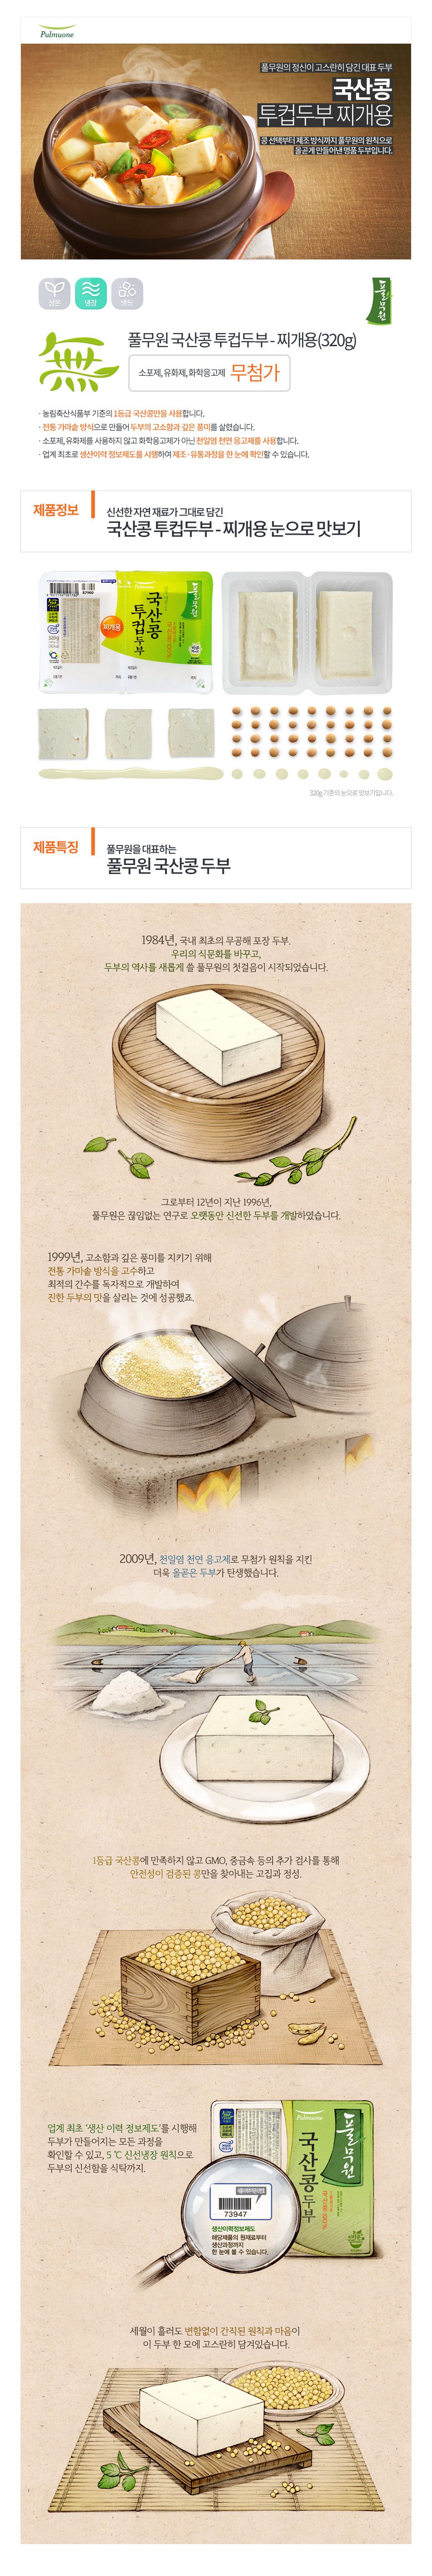 韓國食品-[풀무원] 투컵두부찌개용 160g*2